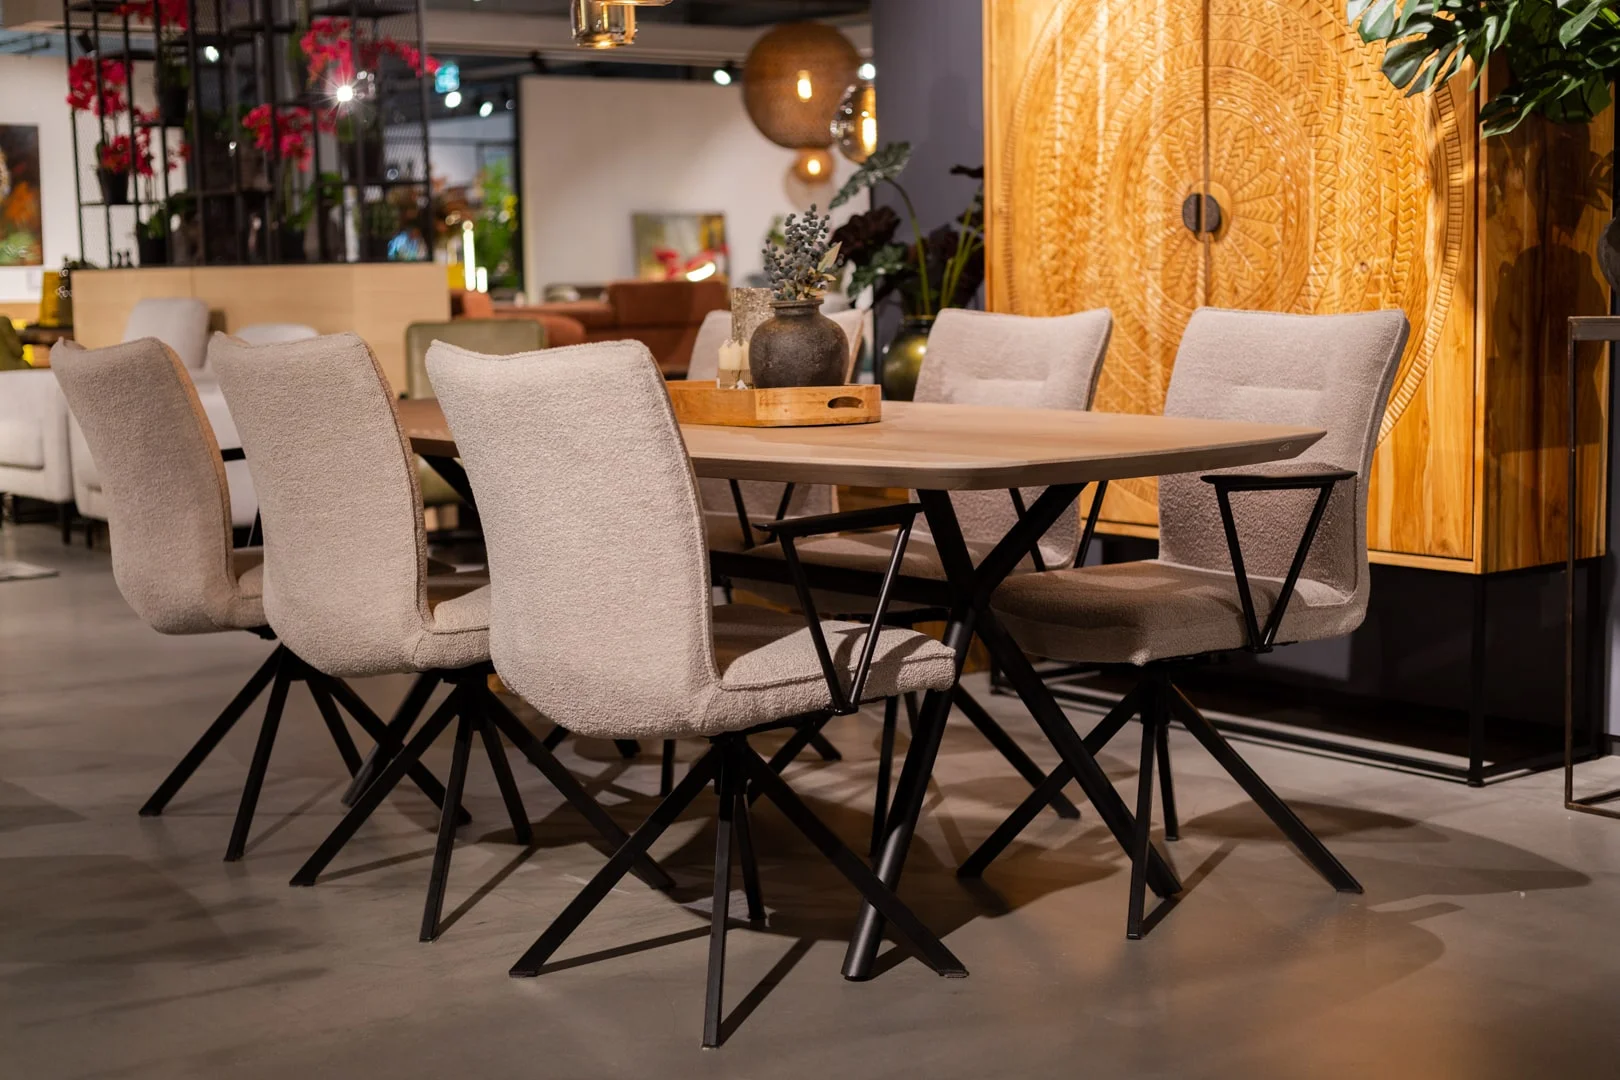 Lichtgrijze eetkamerstoelen aan een houtlook eettafel stoelen